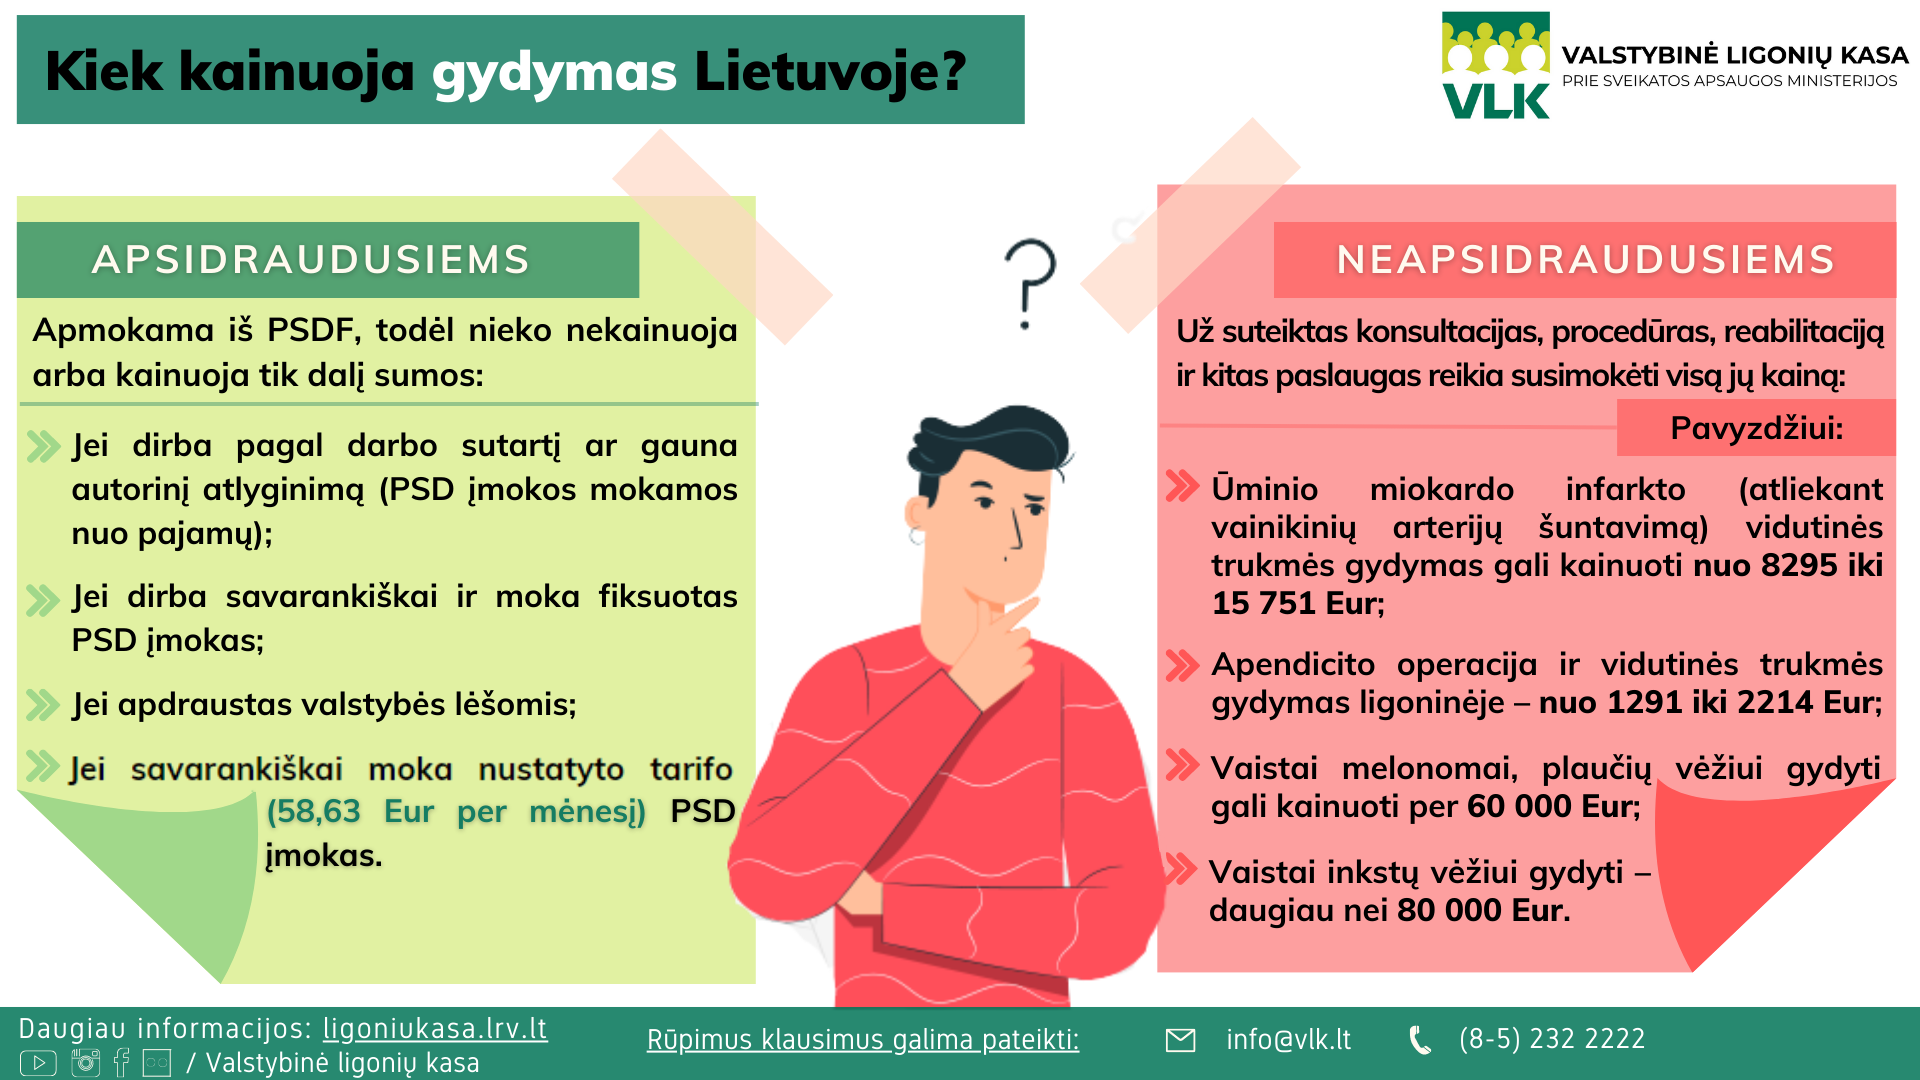 Kiek kainuoja gydymas Lietuvoje infografikas